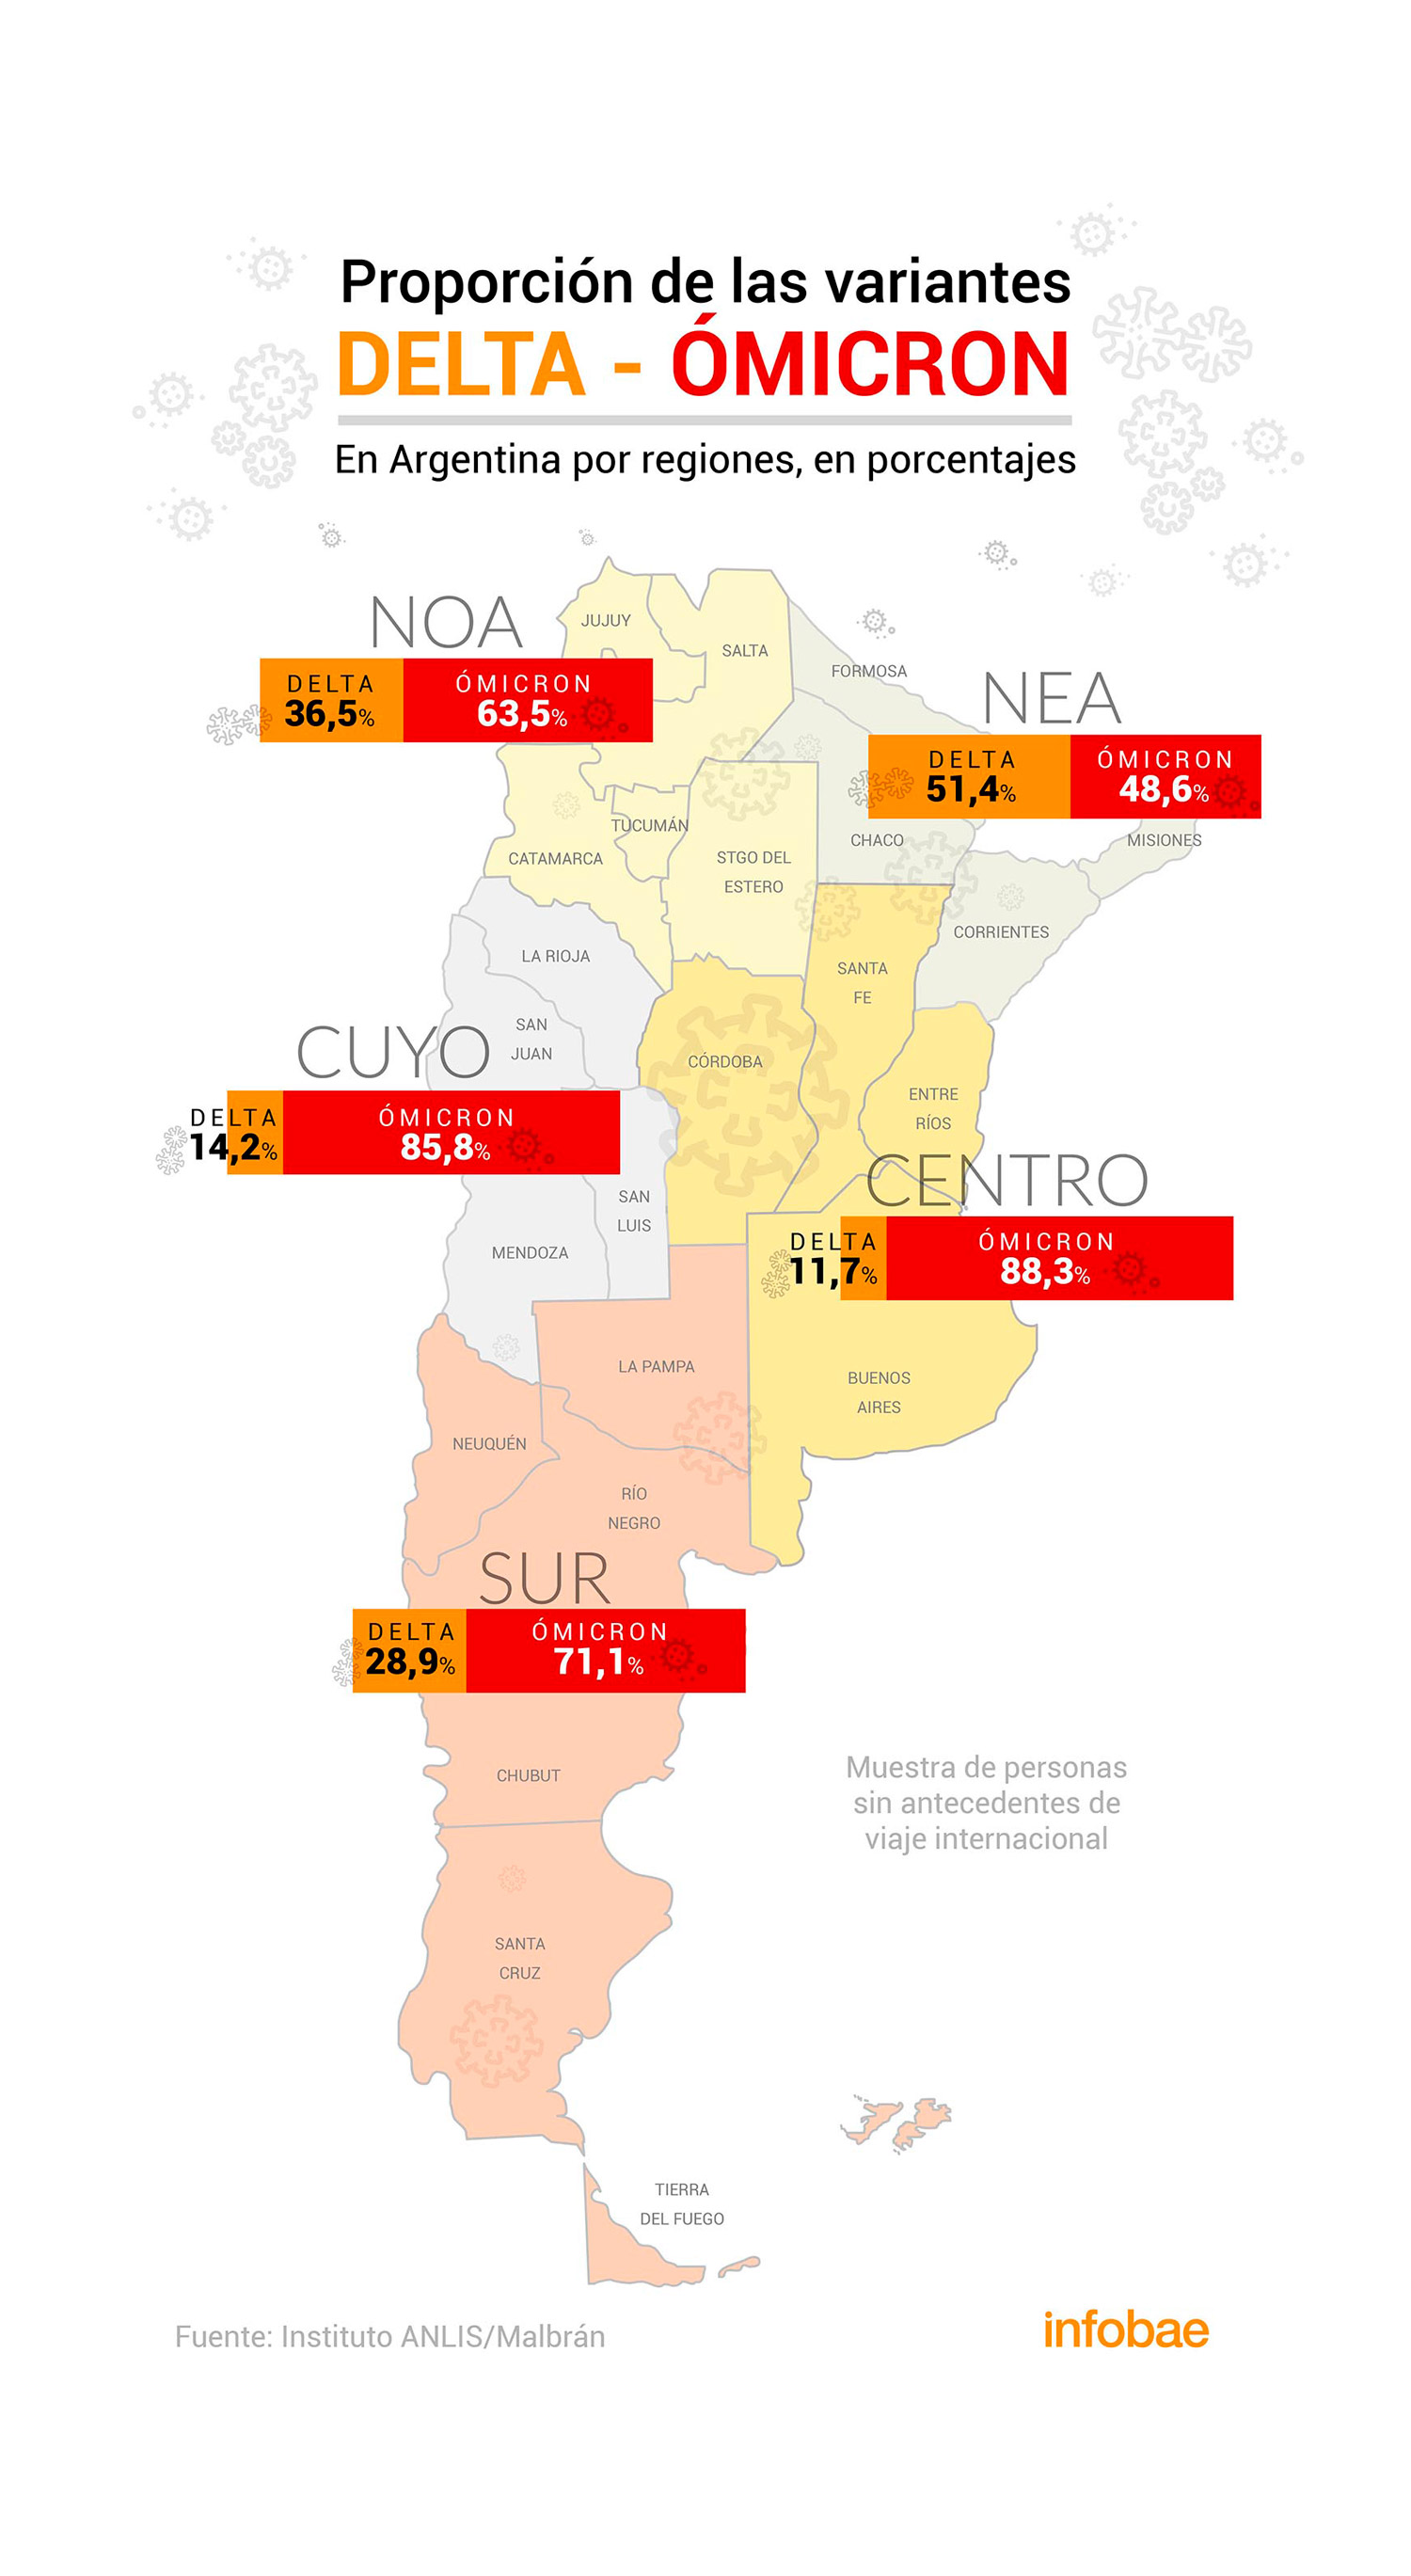 El mapa del predominio de Ómicron en Argentina hasta la segunda semana de enero, según el Instituto ANLIS/Malbrán. La variante Ómicron desplazó a Delta en tan solo 2 semanas